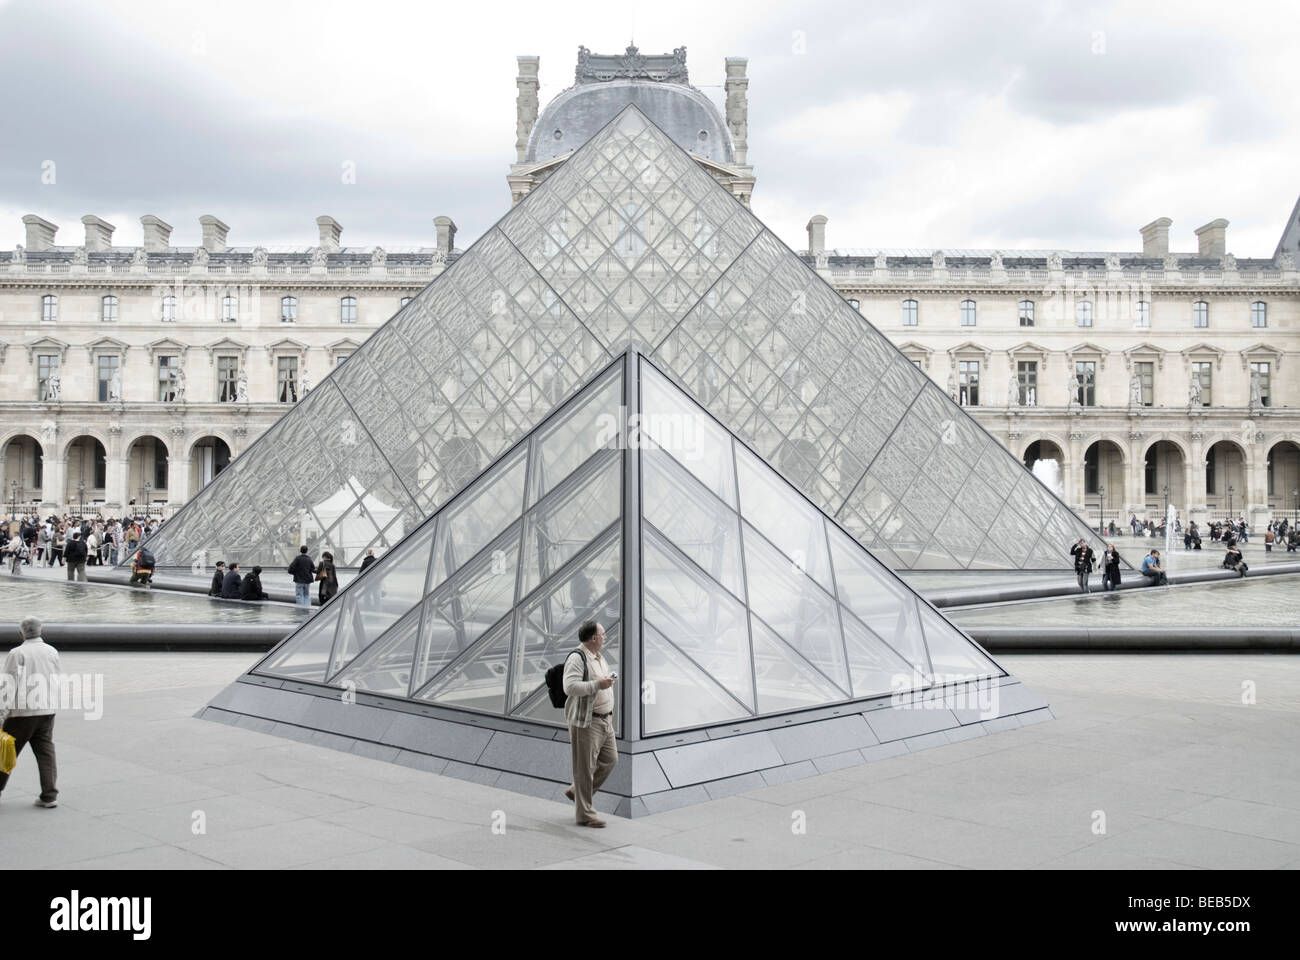 Die Pyramide des Louvre, Teil des Louvre Museum in Paris Stockfoto